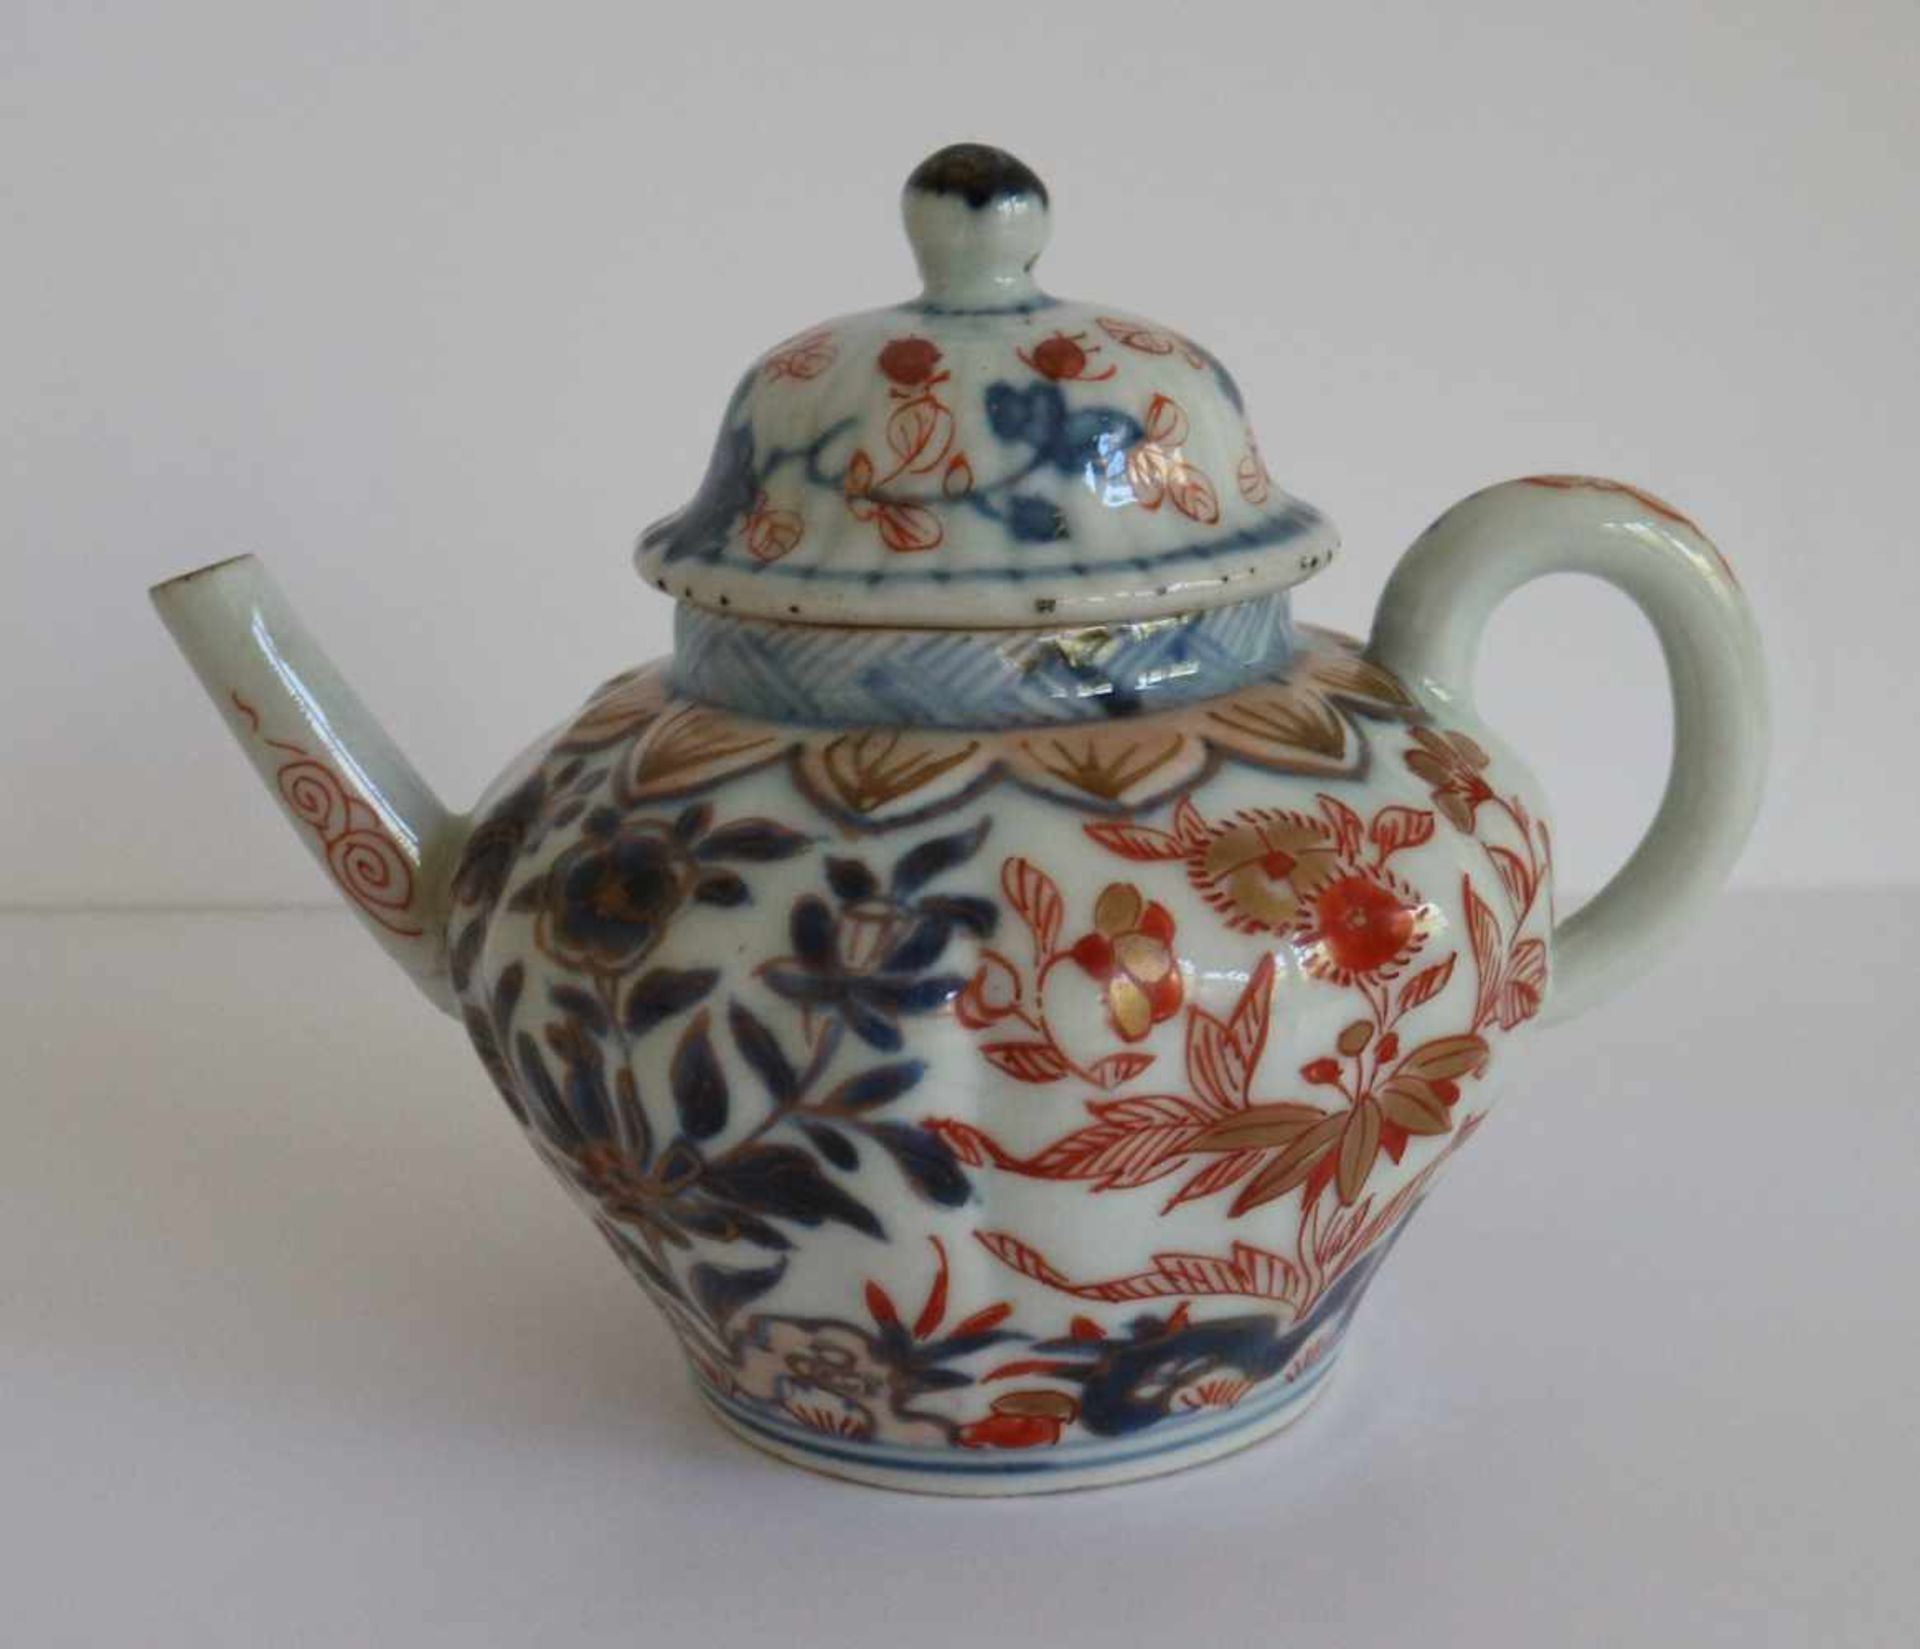 Chinese teapot Imari H 10 B 12,5 cm